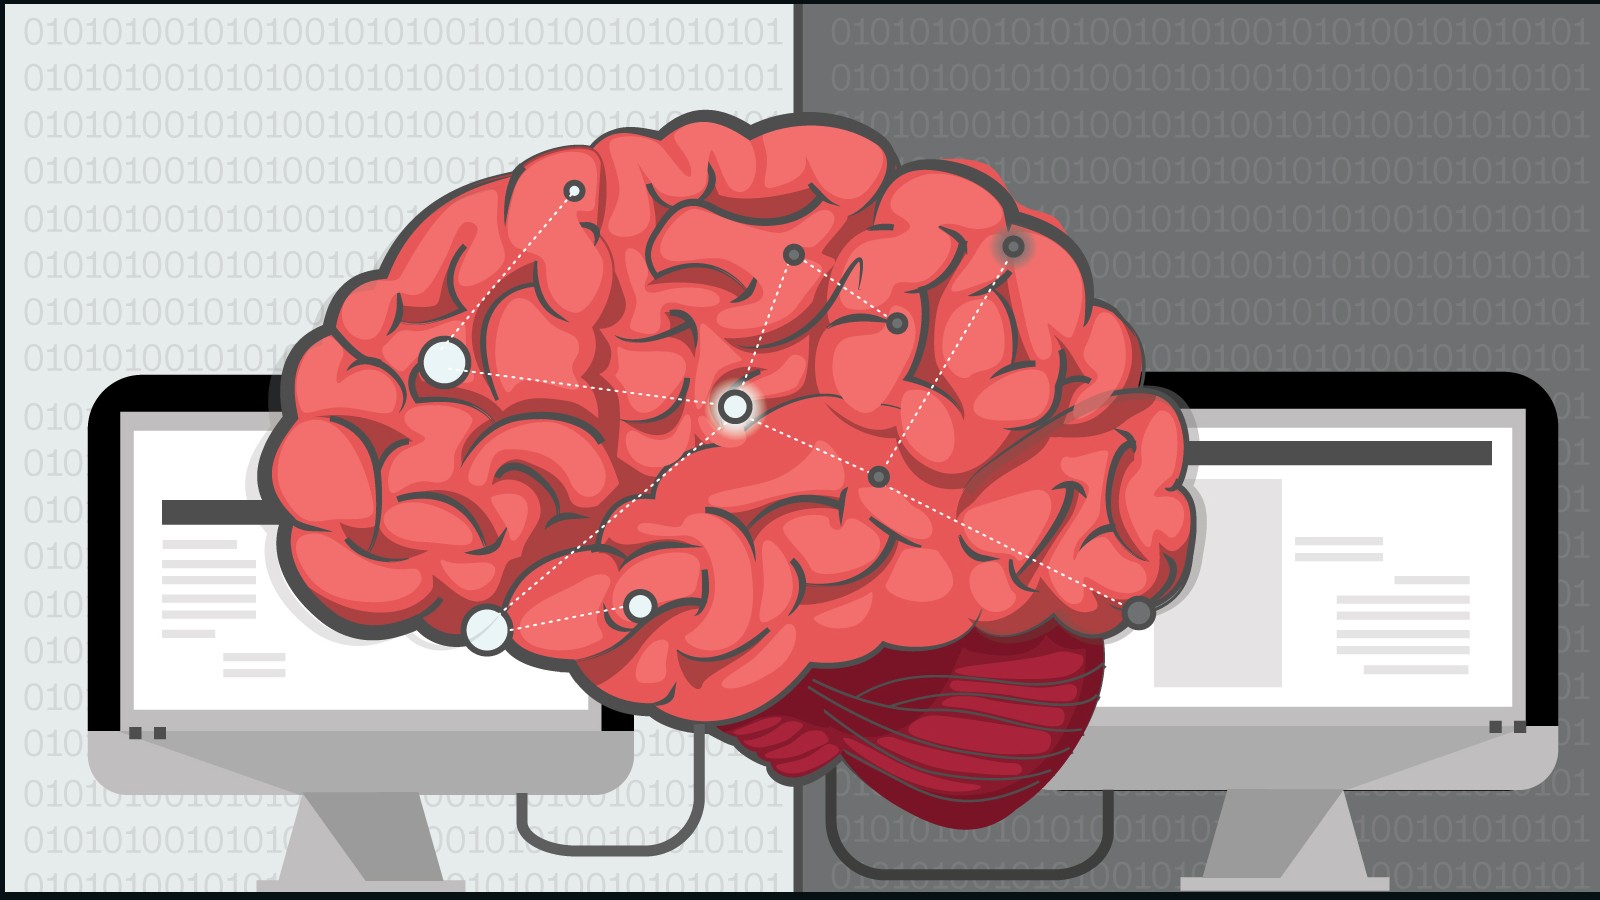 Мозг принимает сигналы. Мозг компьютера. Механический мозг. Мощный мозг. Интерфейс в мозг.